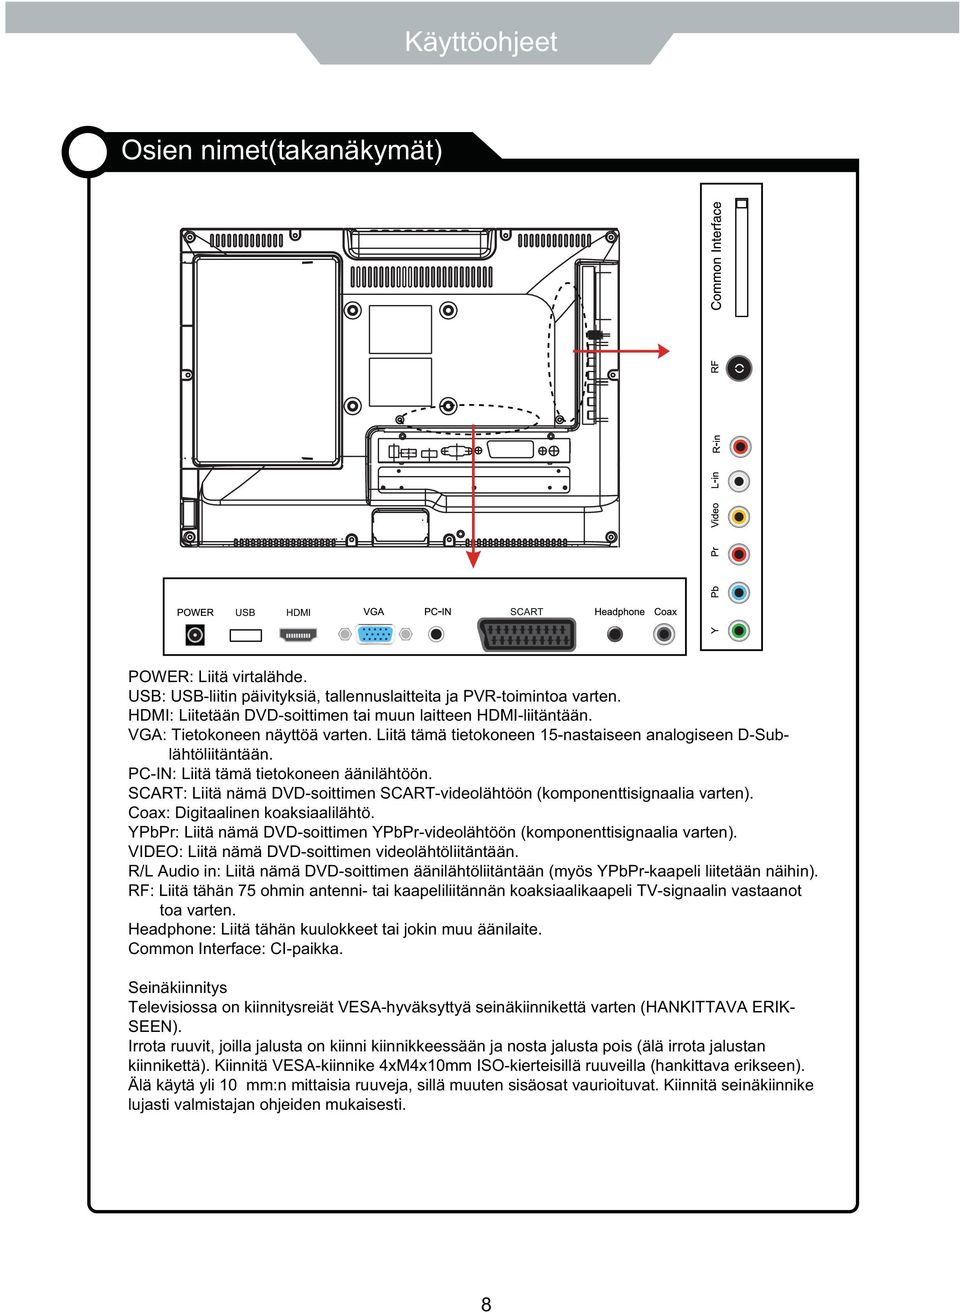 PC-IN: Liitä tämä tietokoneen äänilähtöön. SCART: Liitä nämä DVD-soittimen SCART-videolähtöön (komponenttisignaalia varten). Coax: Digitaalinen koaksiaalilähtö.